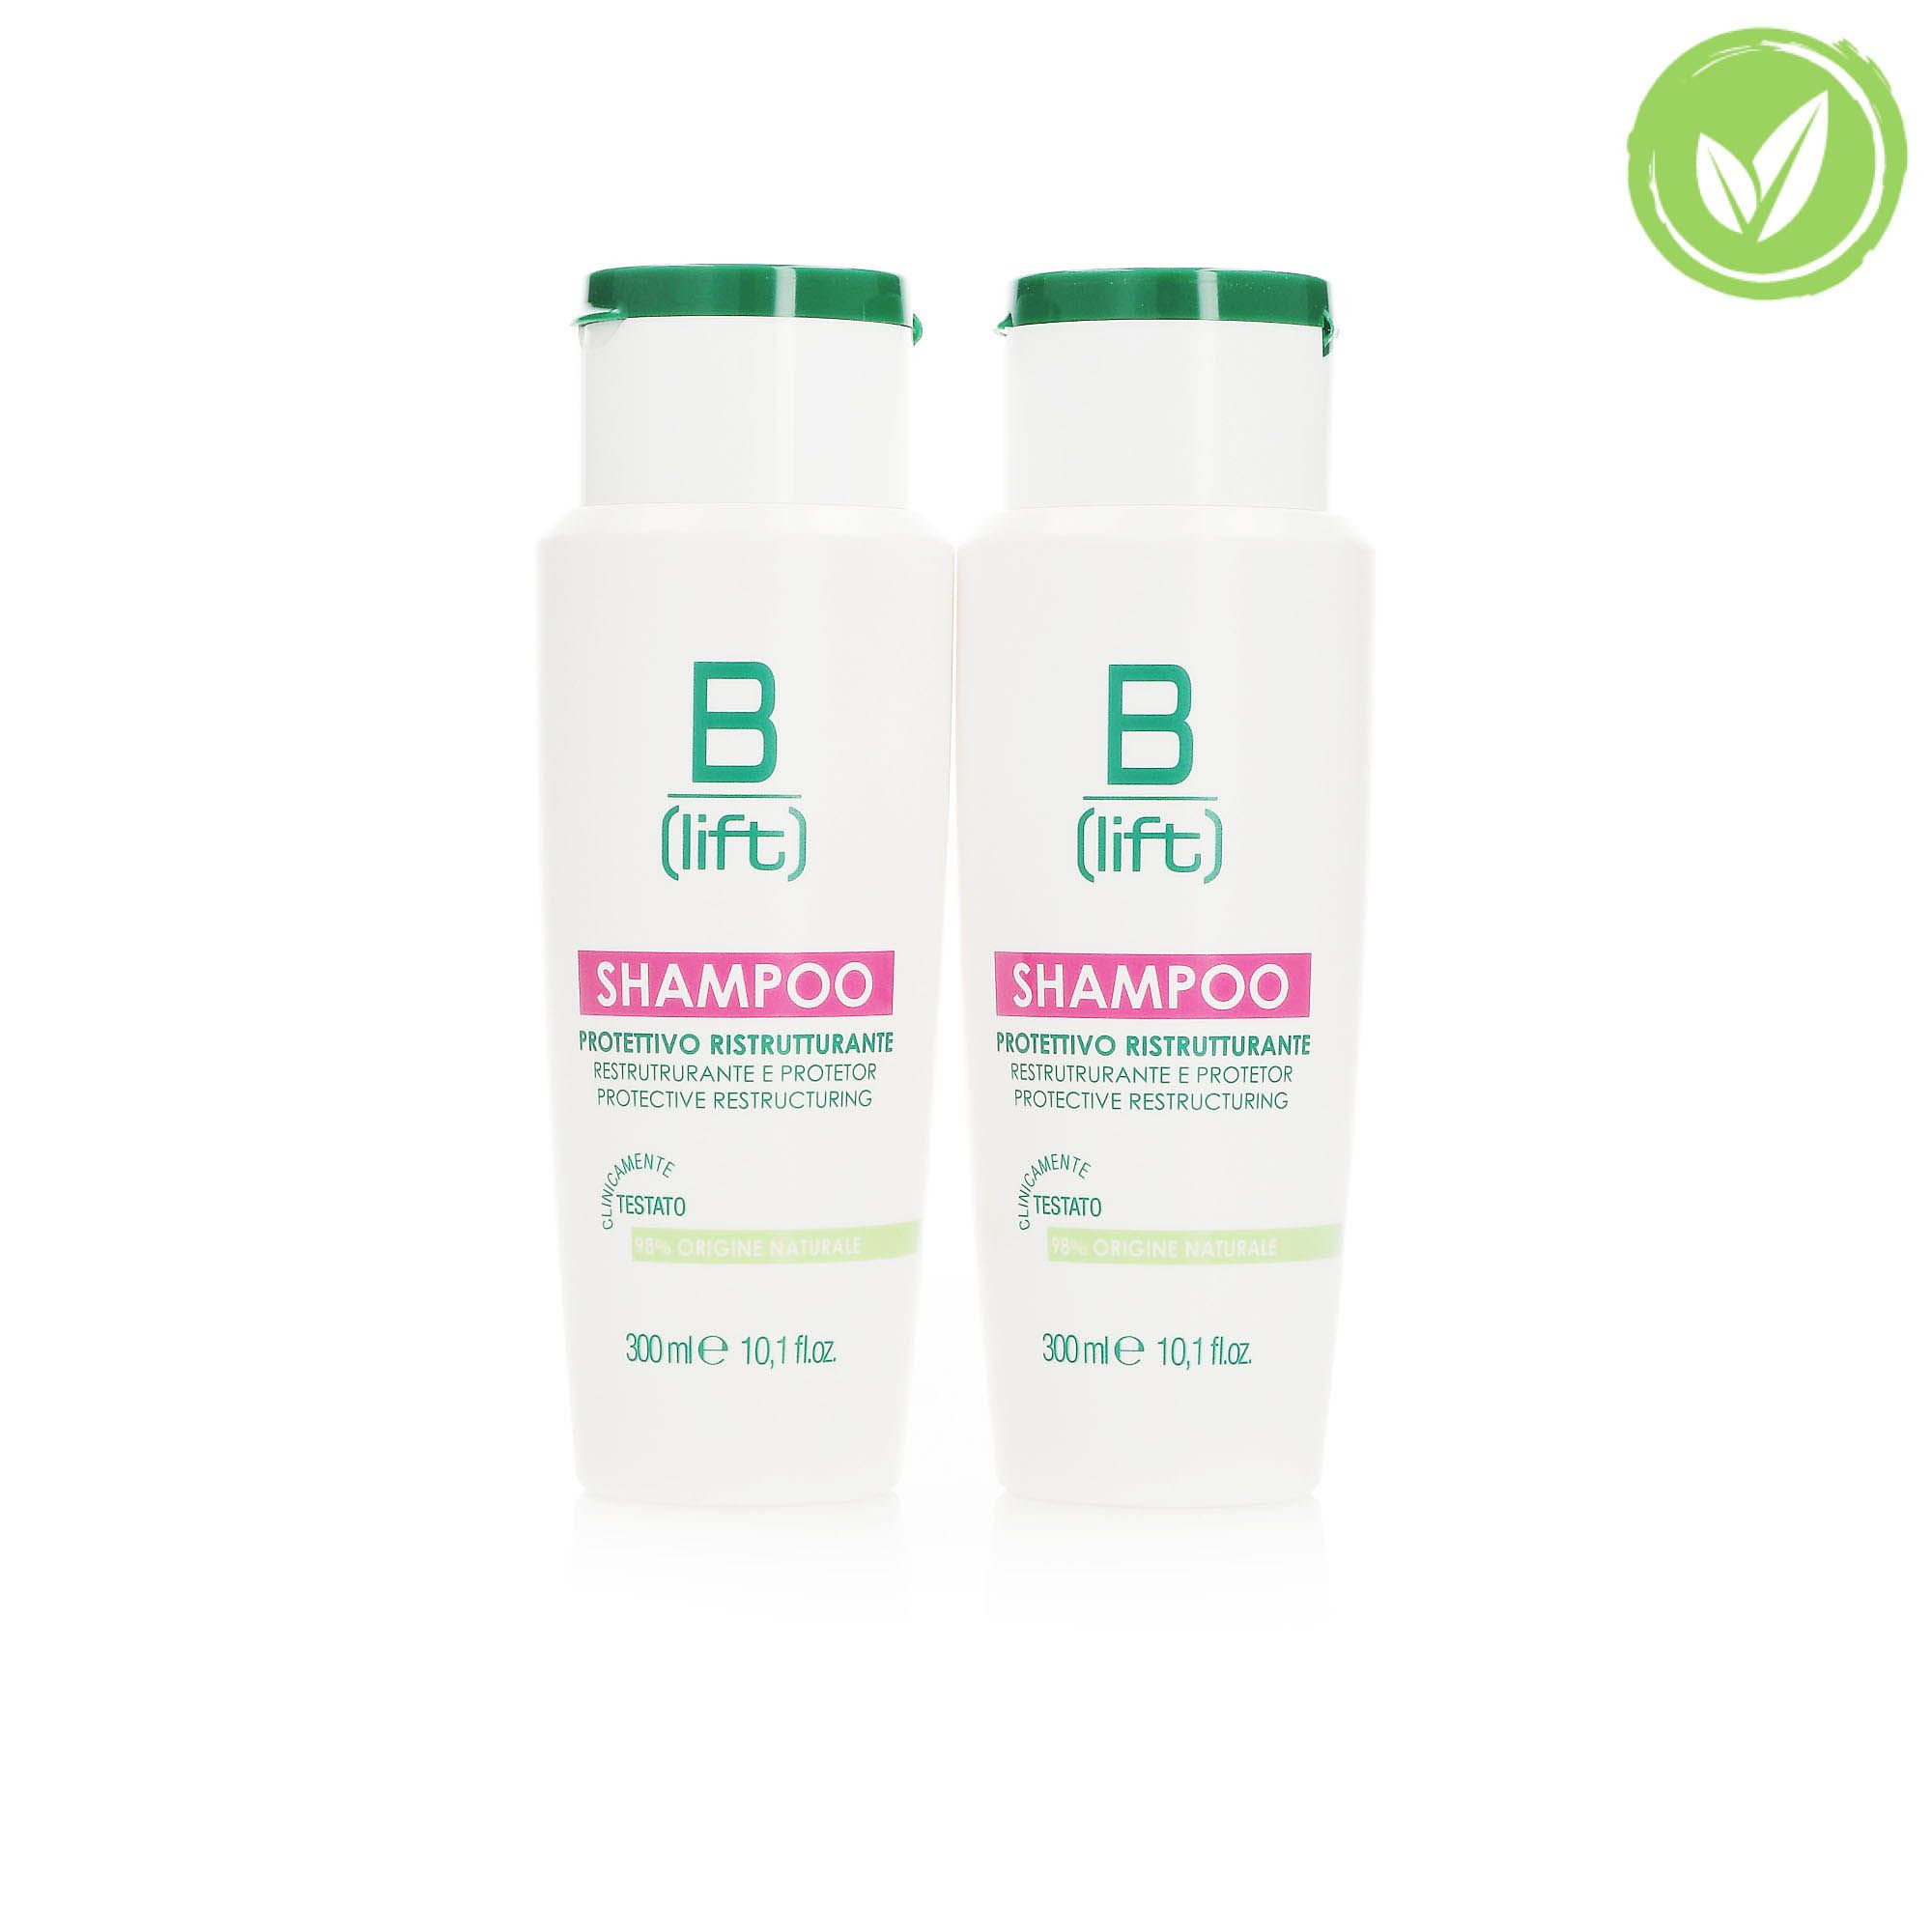 Image of B-Lift Shampoo Protettivo Ristrutturante (2 x 300ml)